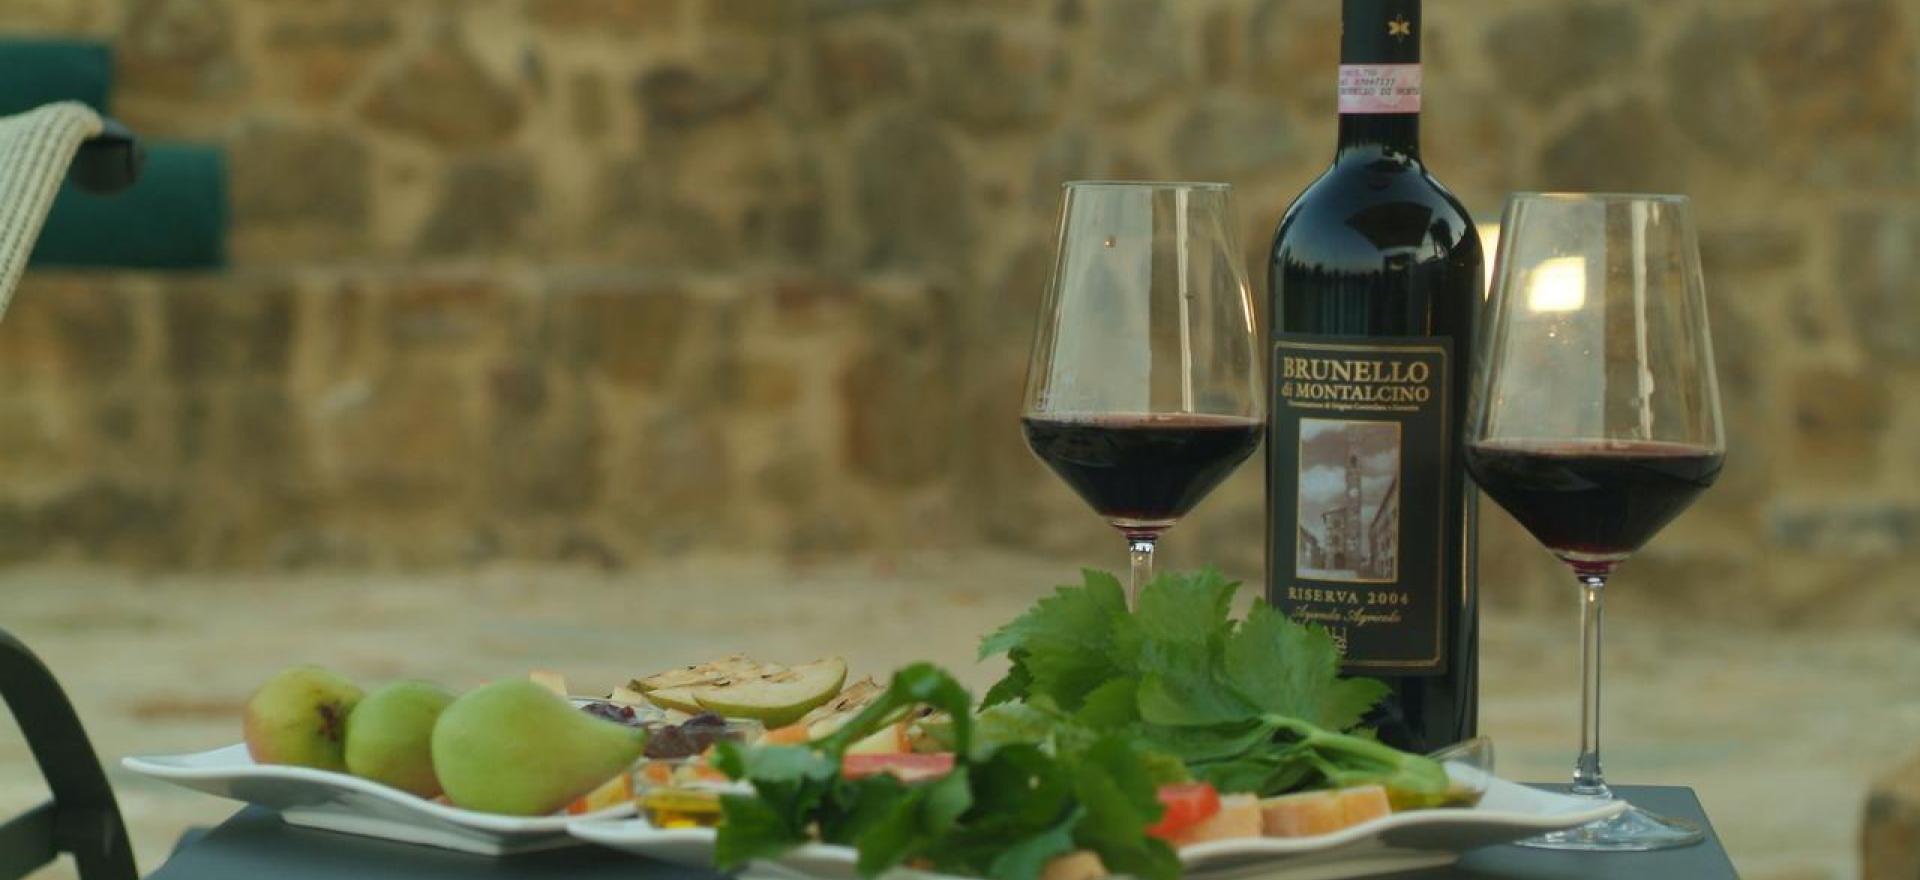 Luxe agriturismo tussen wijngaarden van de Brunello